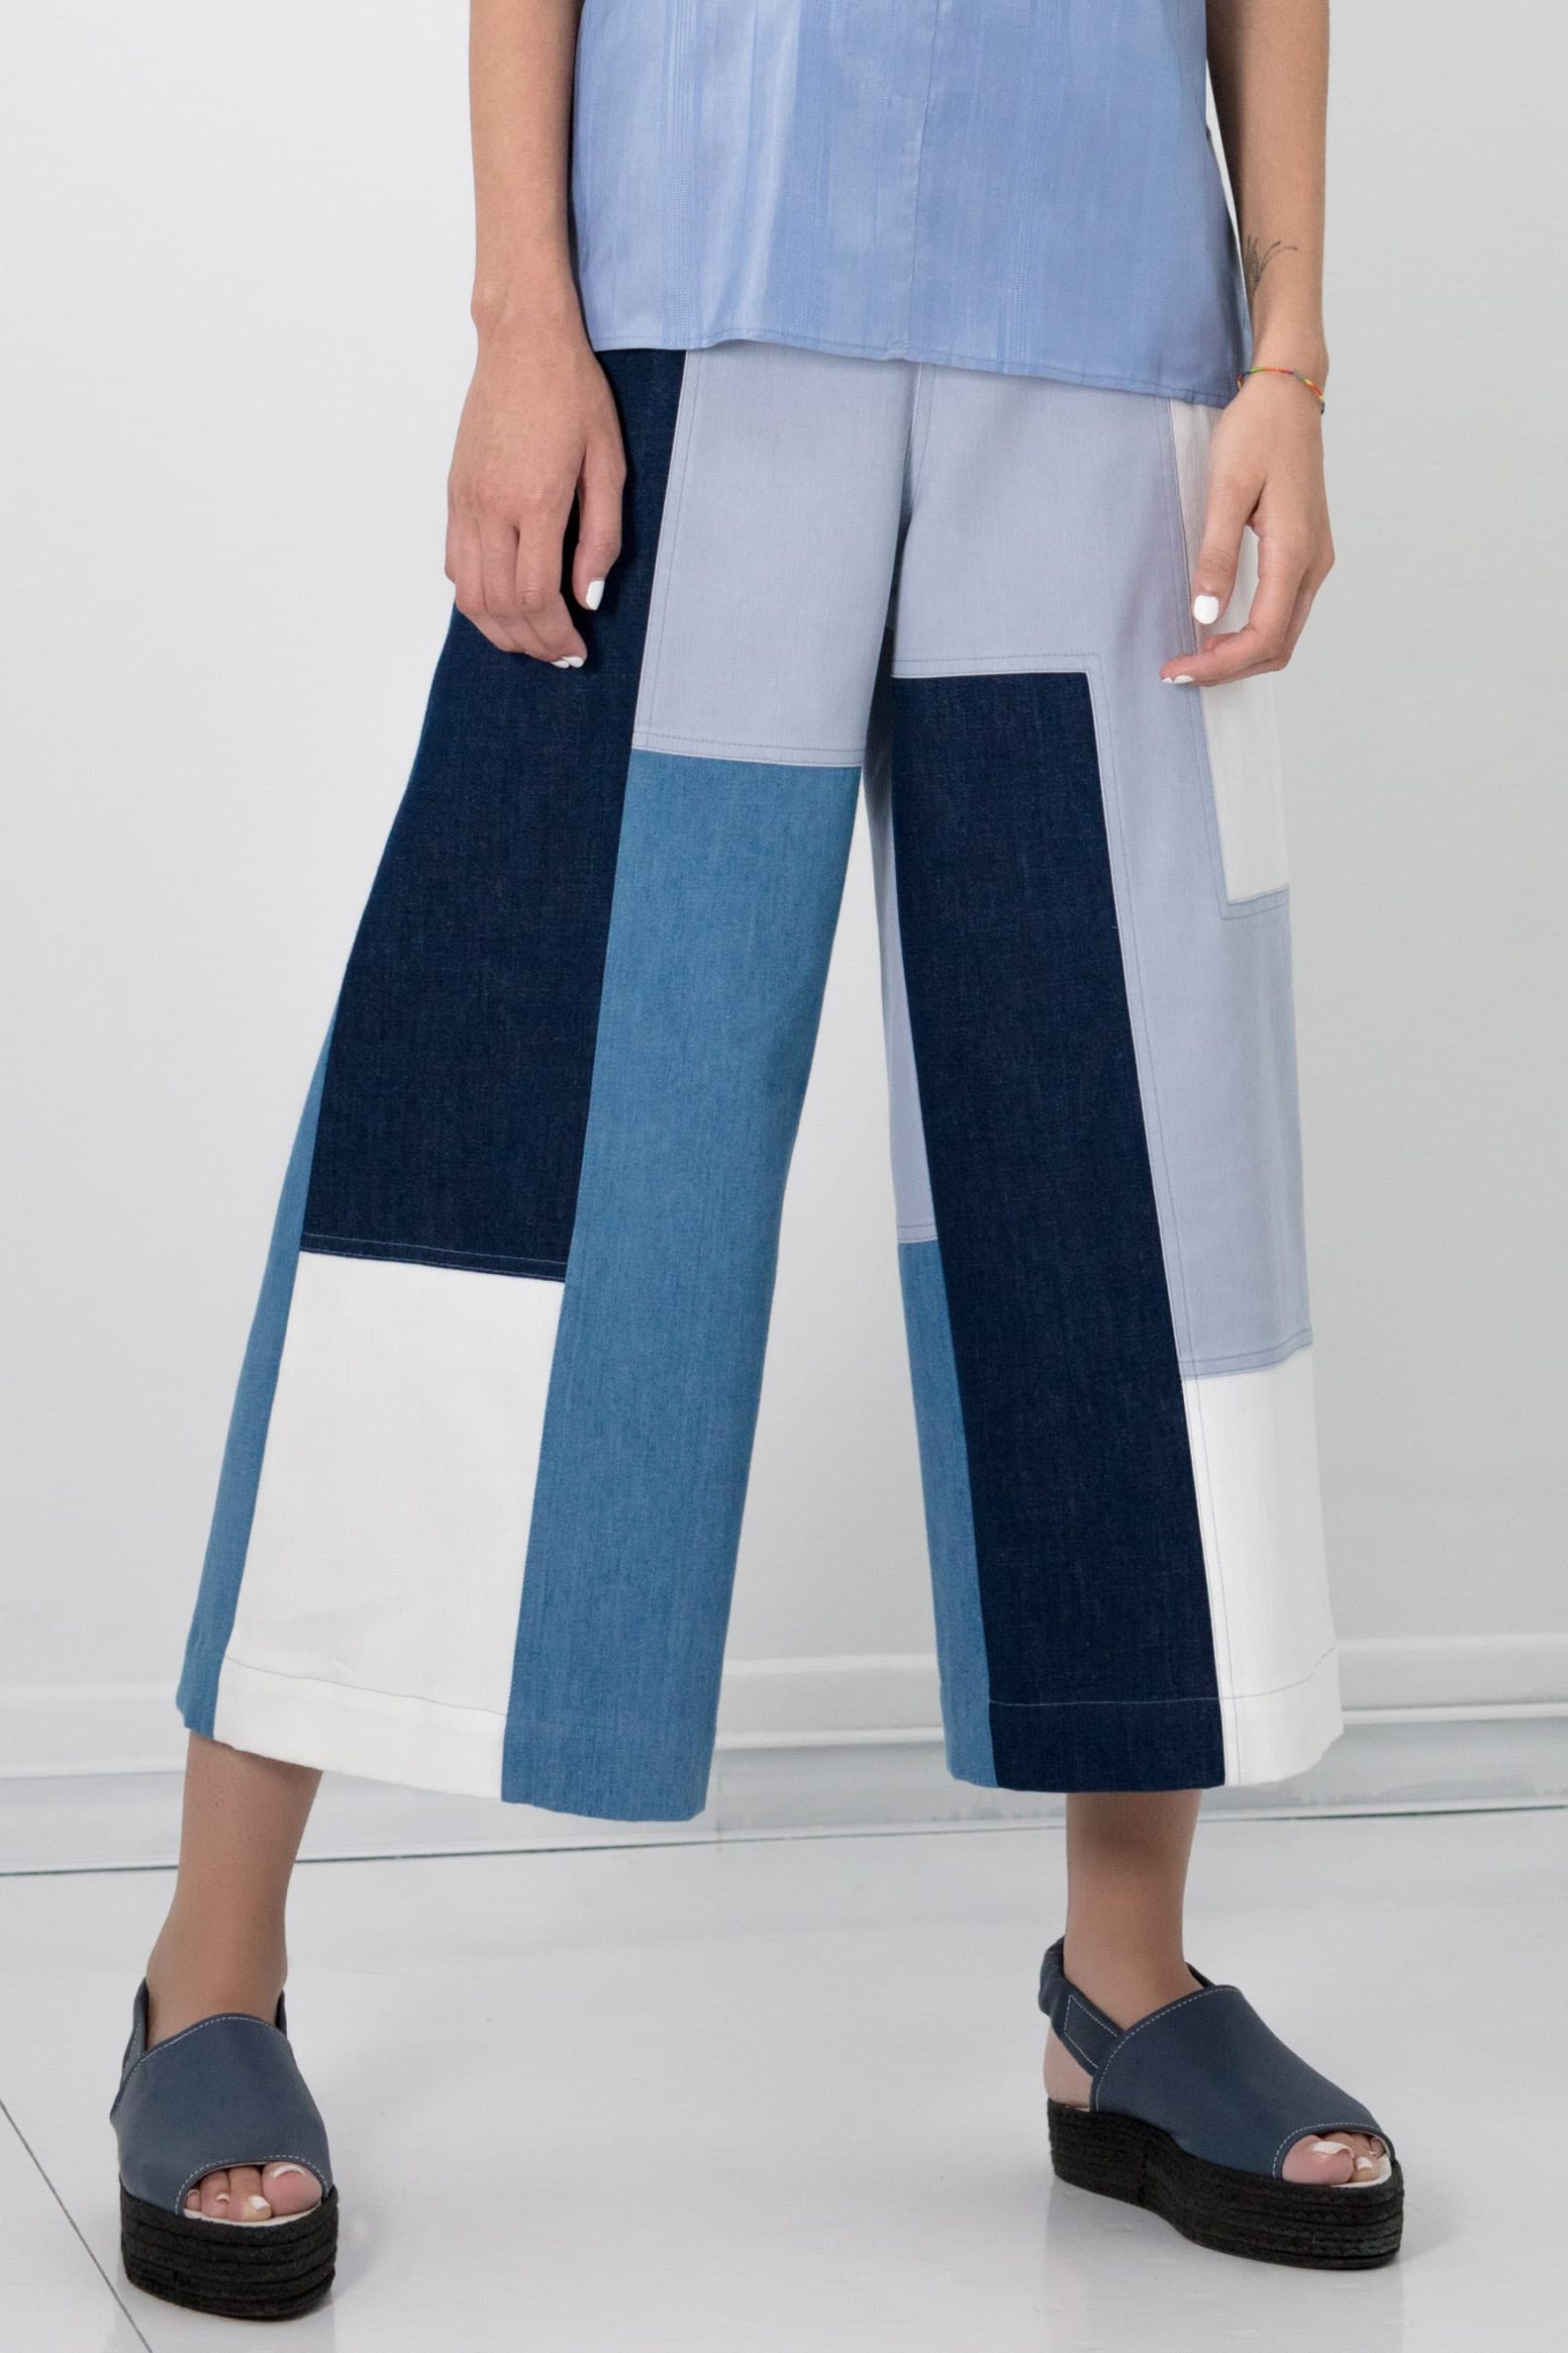 Pantalon large cropped I Patchwork de coton et denim I Anissa Aïda I Vue en détail I Label AÉ Paris